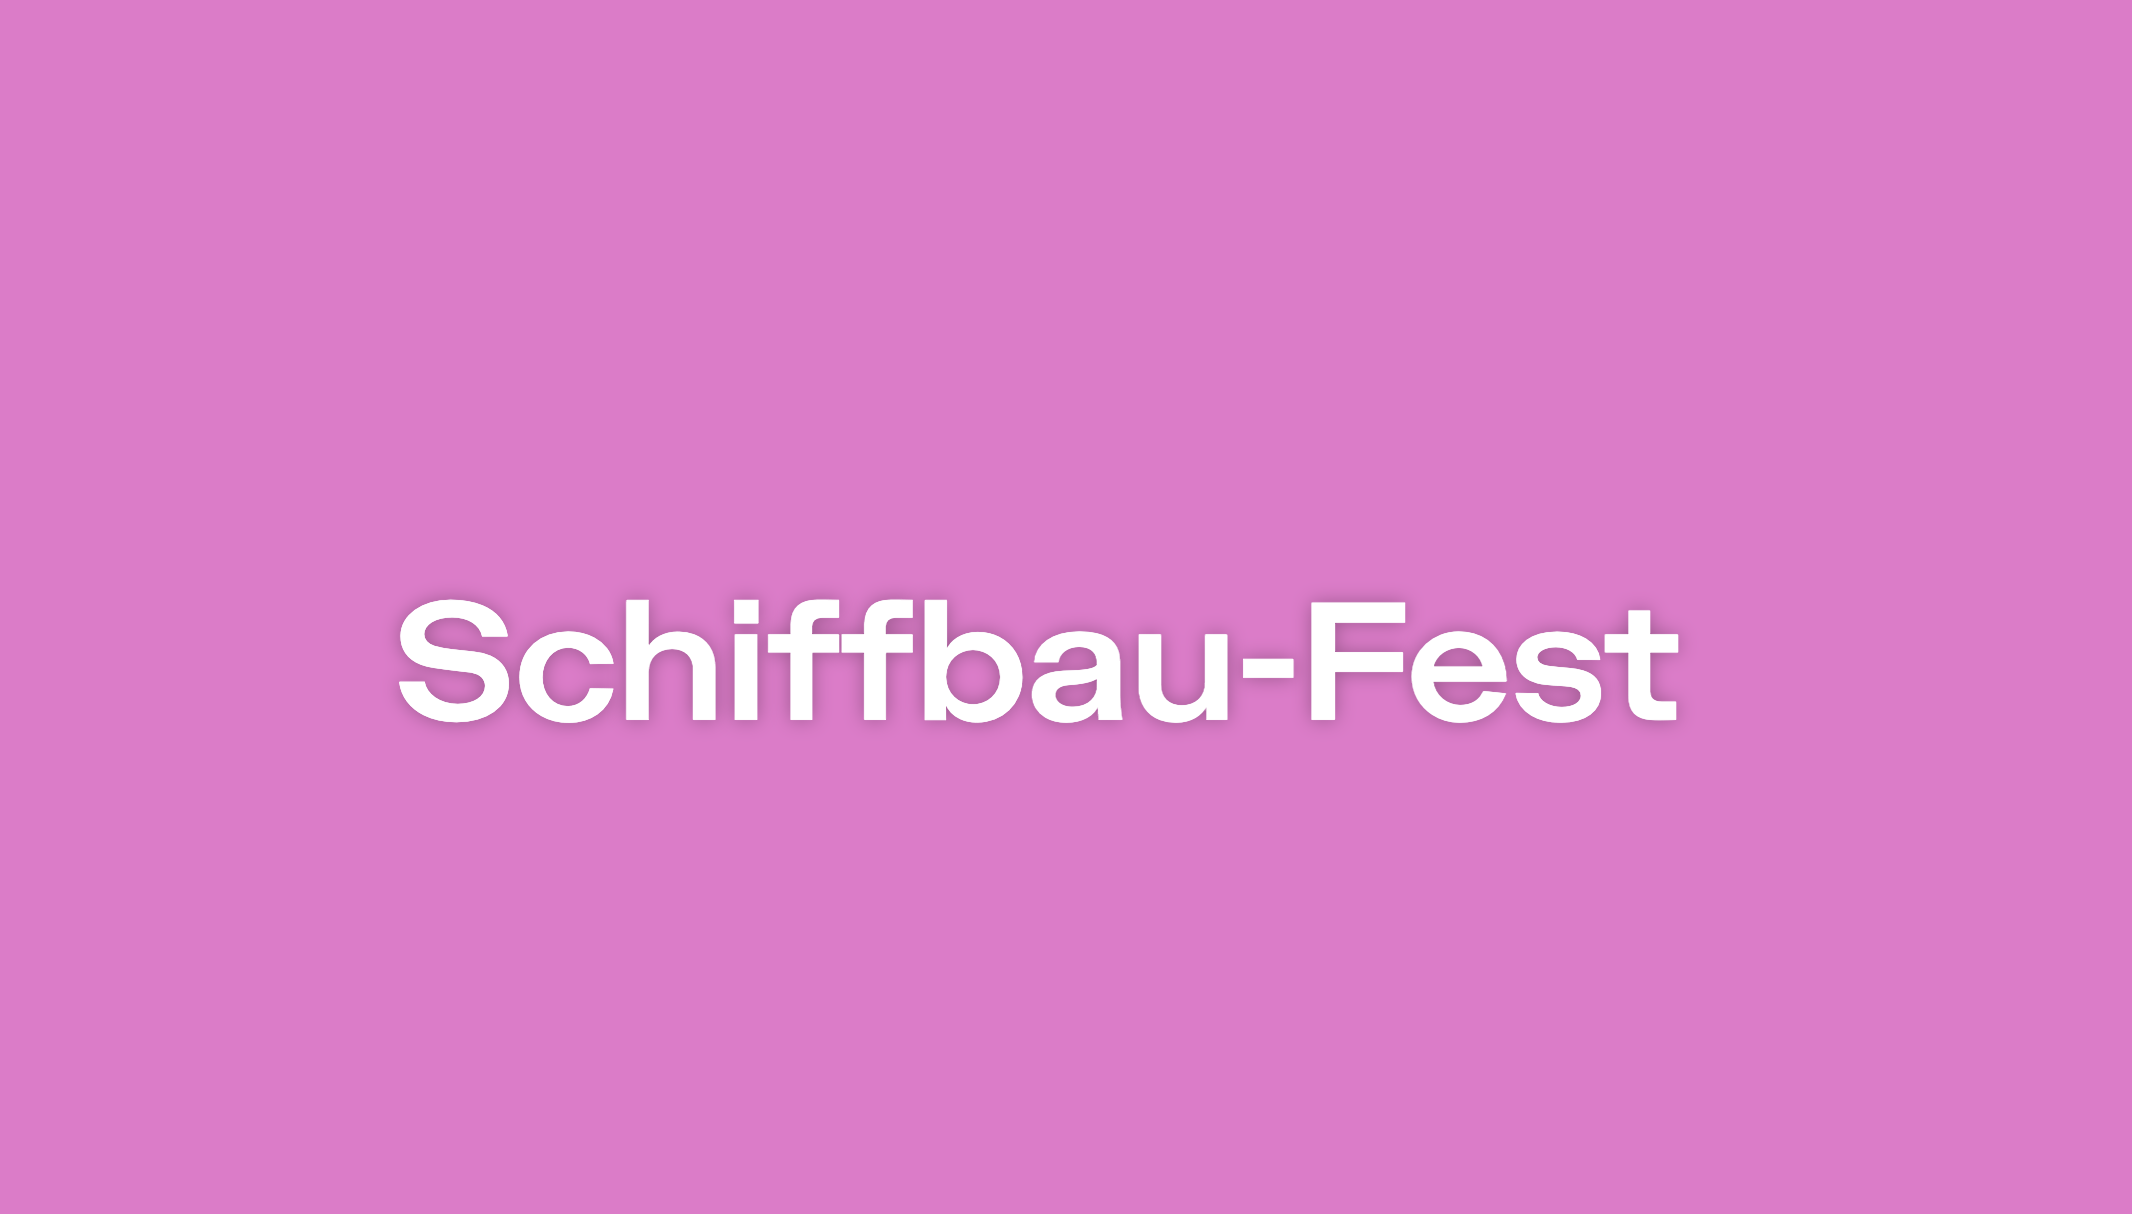 Schiffbau-Fest